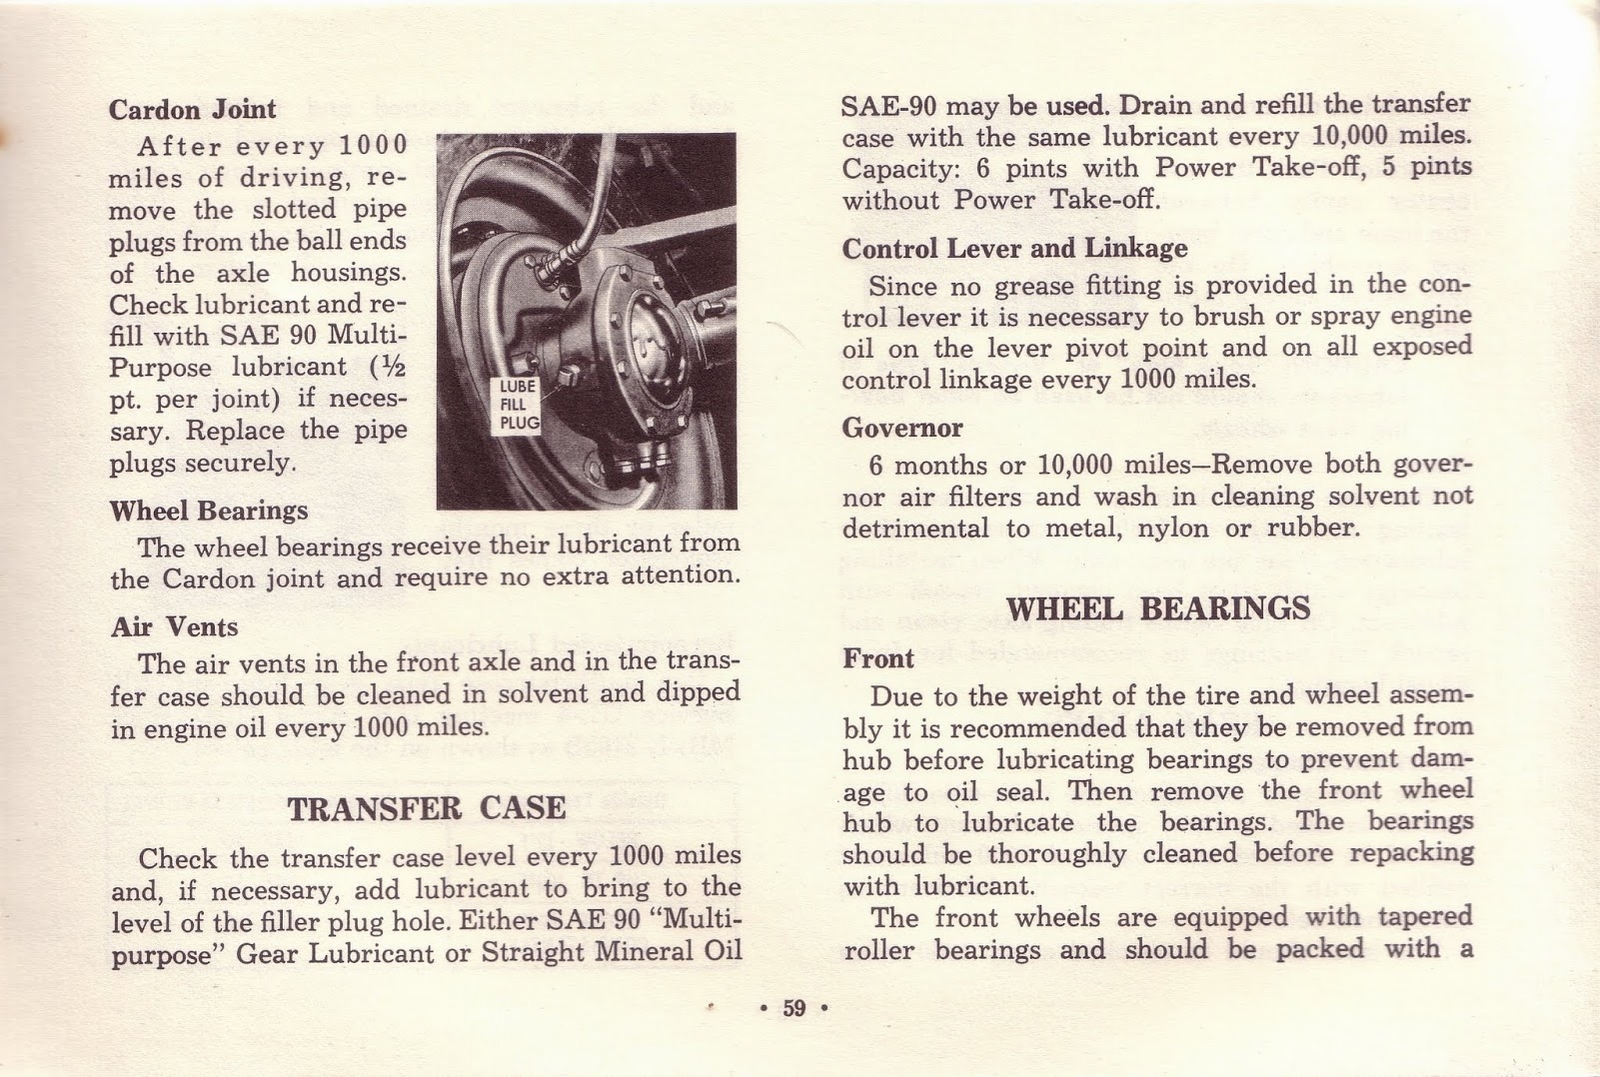 n_1963 Chevrolet Truck Owners Guide-59.jpg